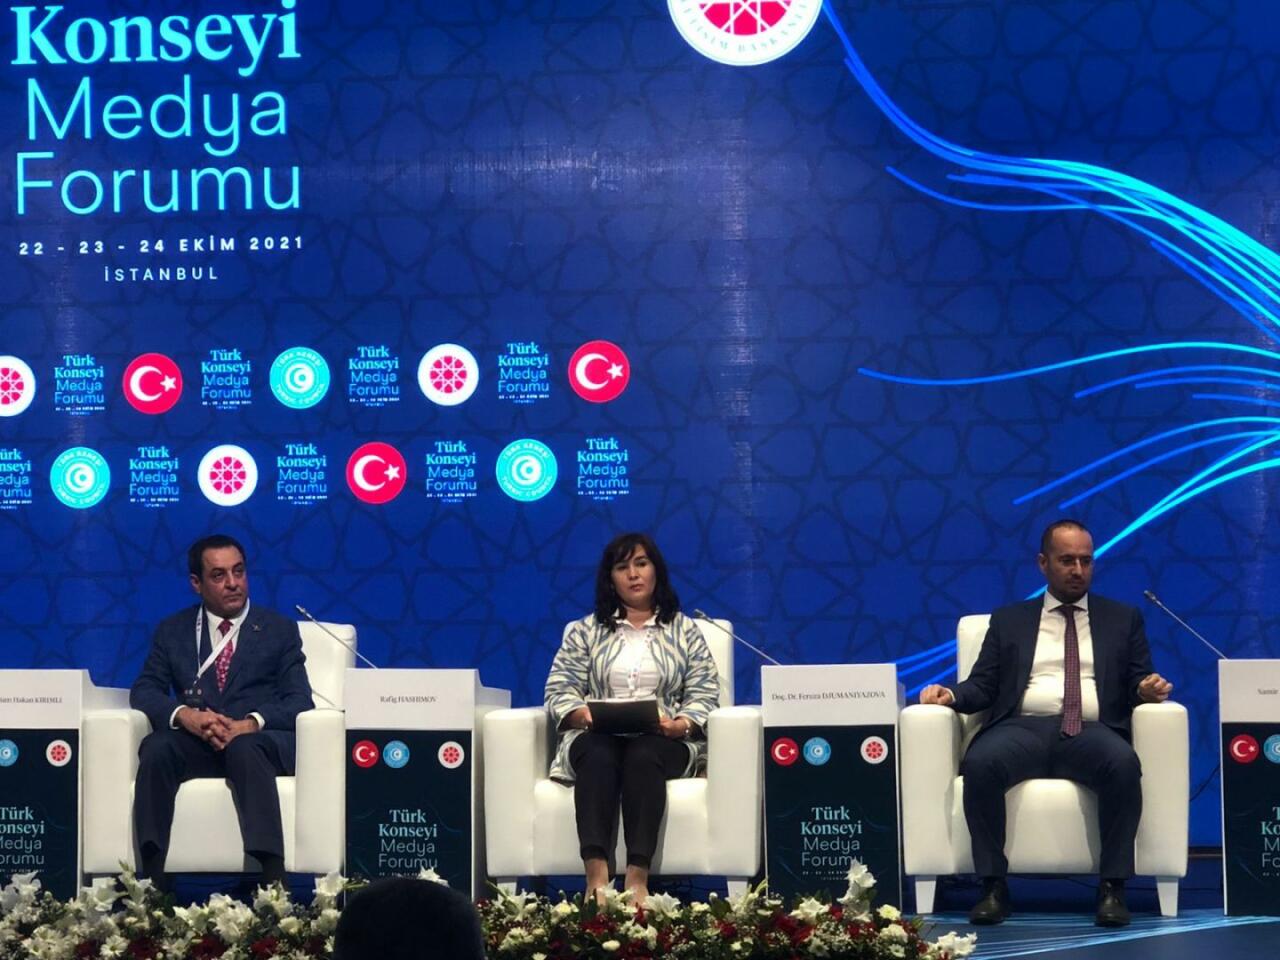 Türk Dünyası (turkic.world) layihəsi İstanbulda keçirilən Türk Şurasının Media forumunda təqdim olunub